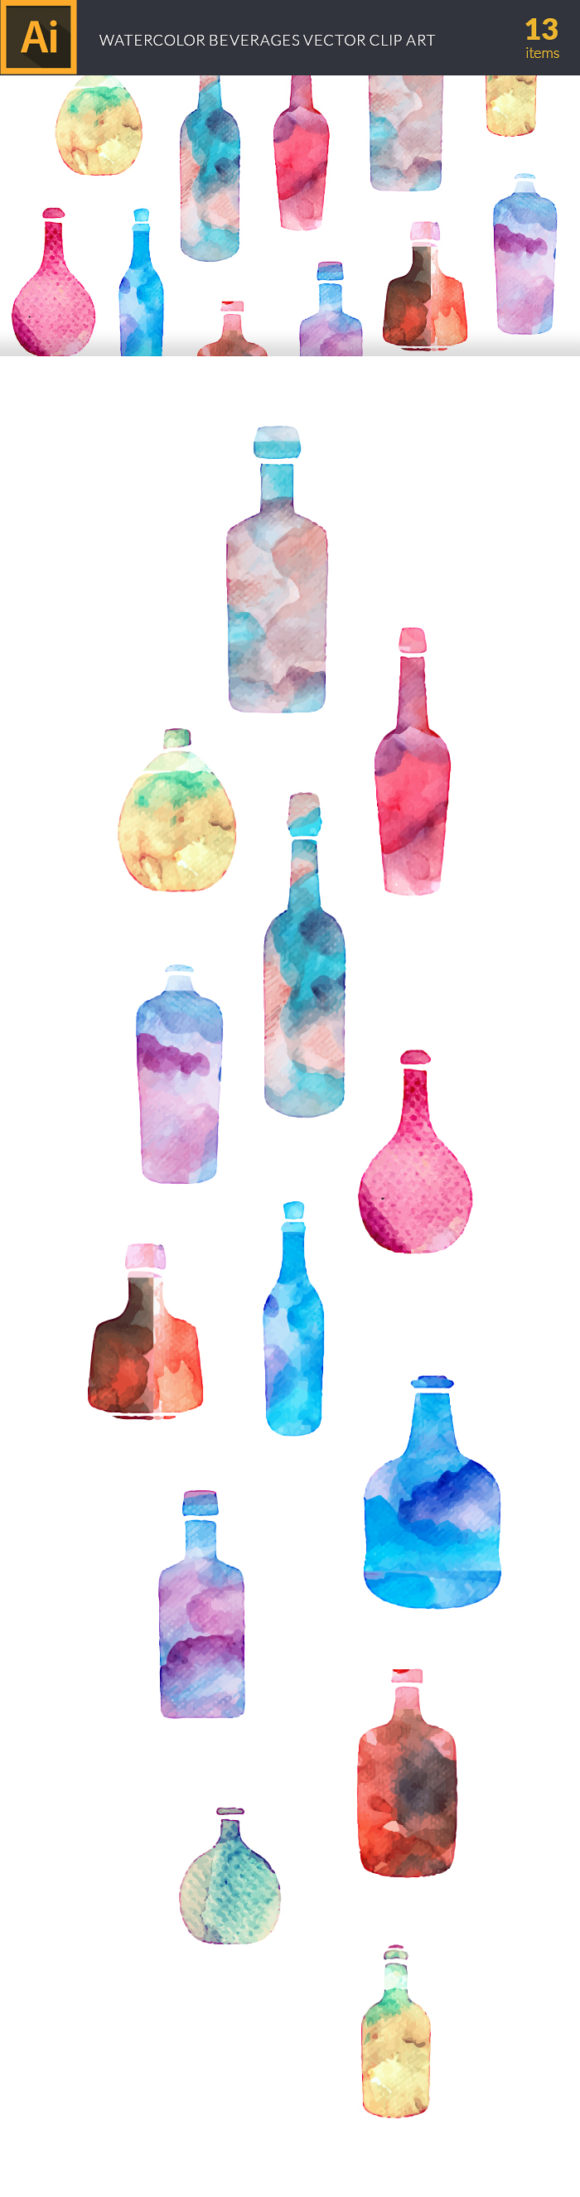 Watercolor Beverages Vector Set 2